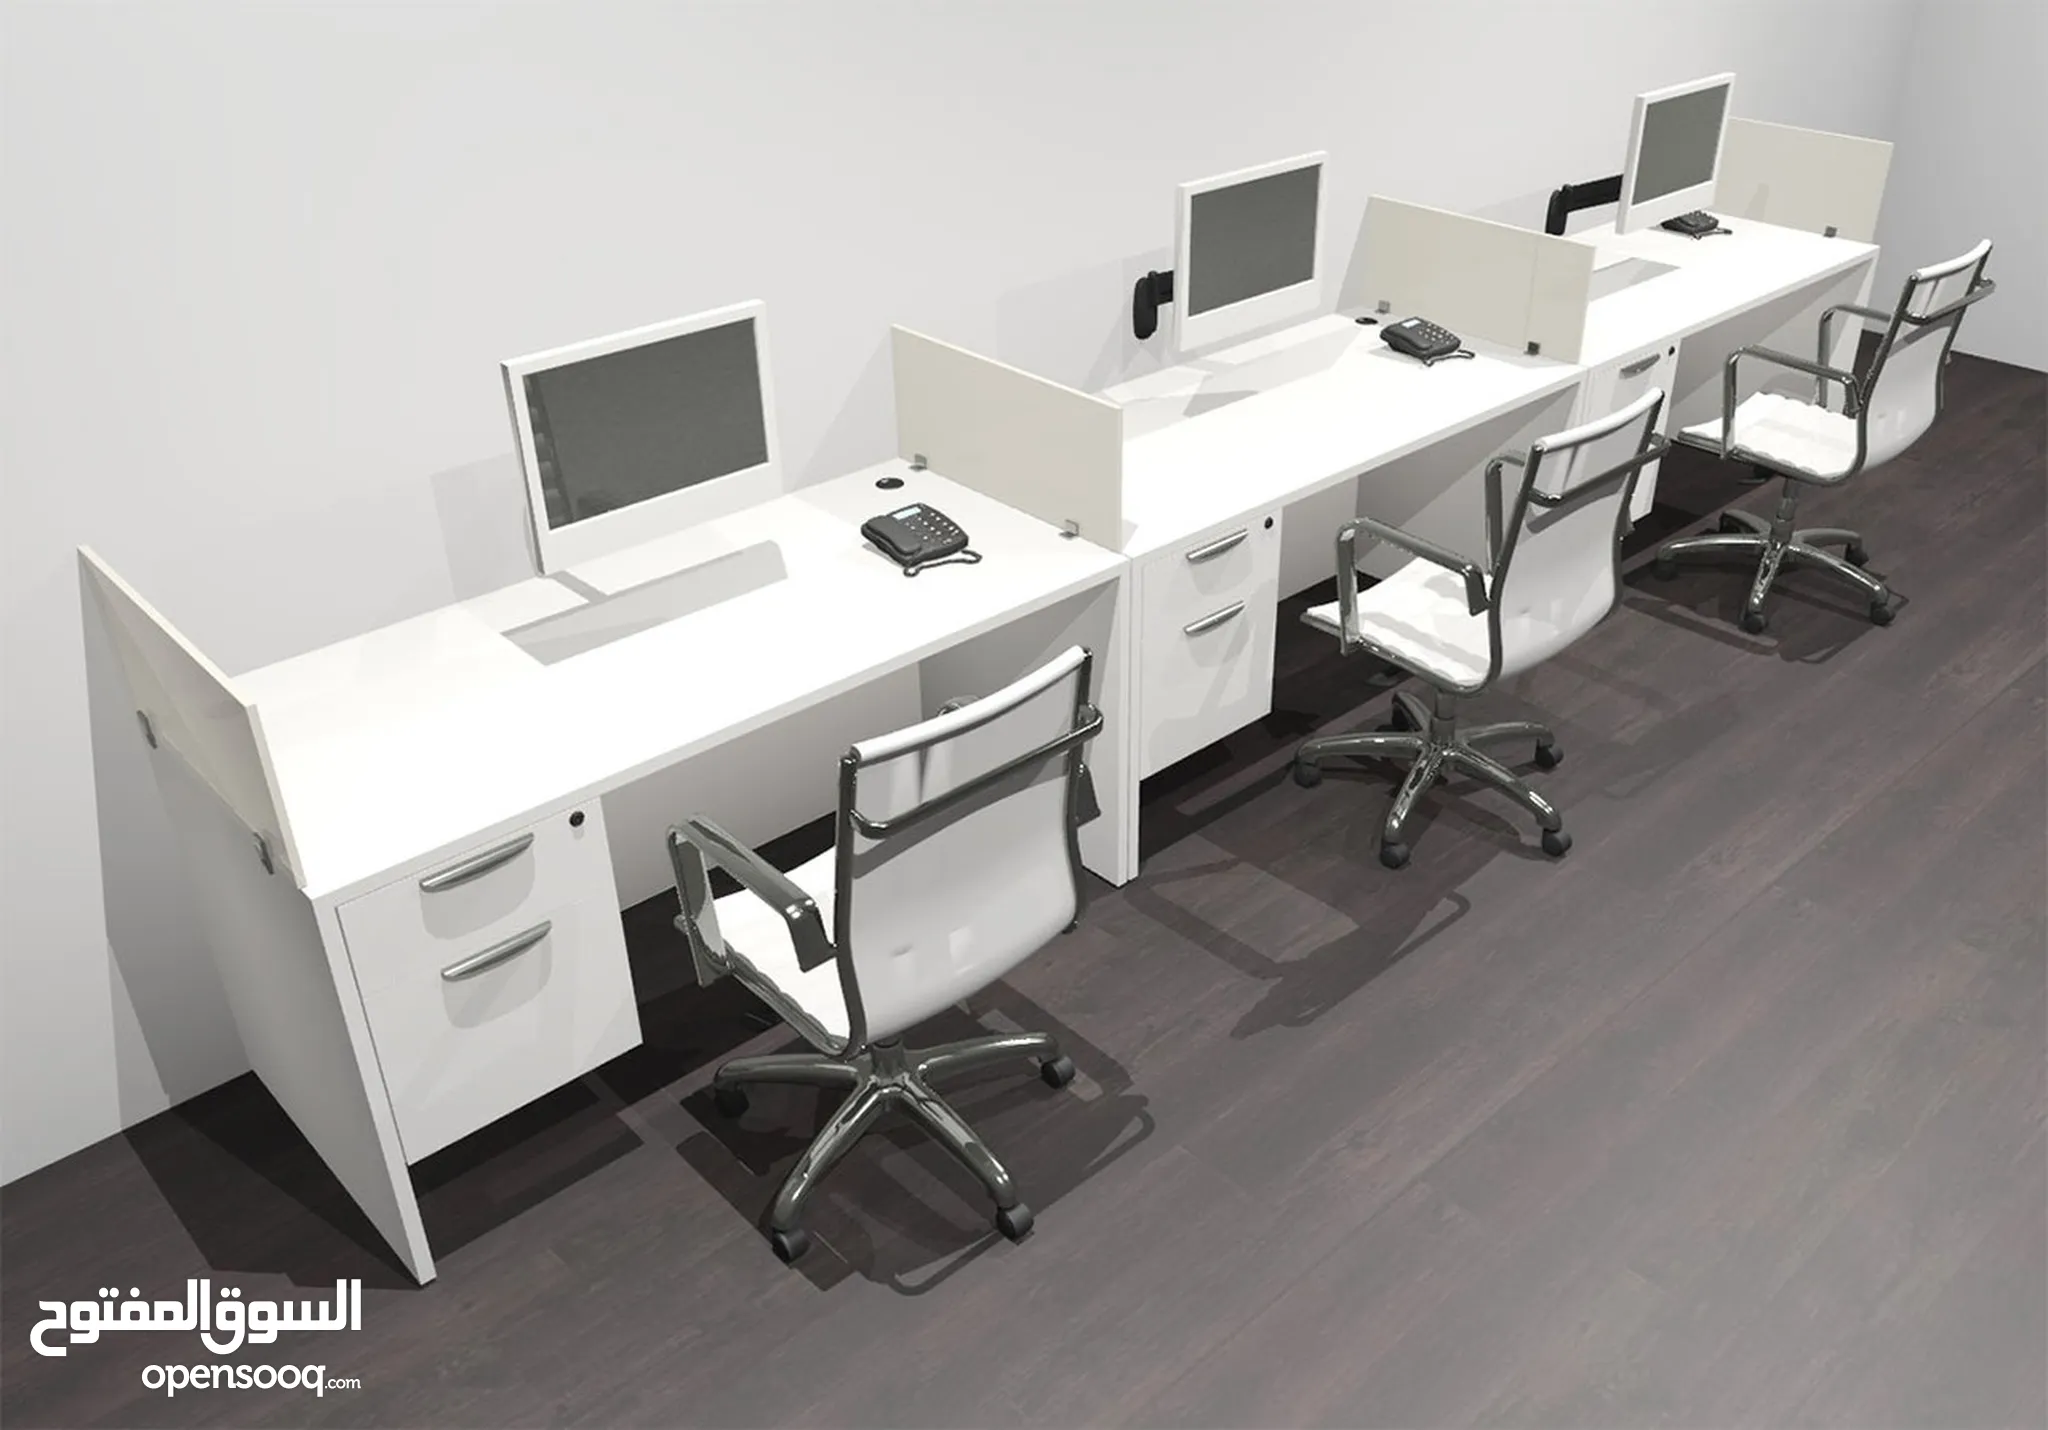 اثاث مكاتب للبيع : اثاث مكتبي : طاولات وكراسي : ارخص الاسعار في الإمارات